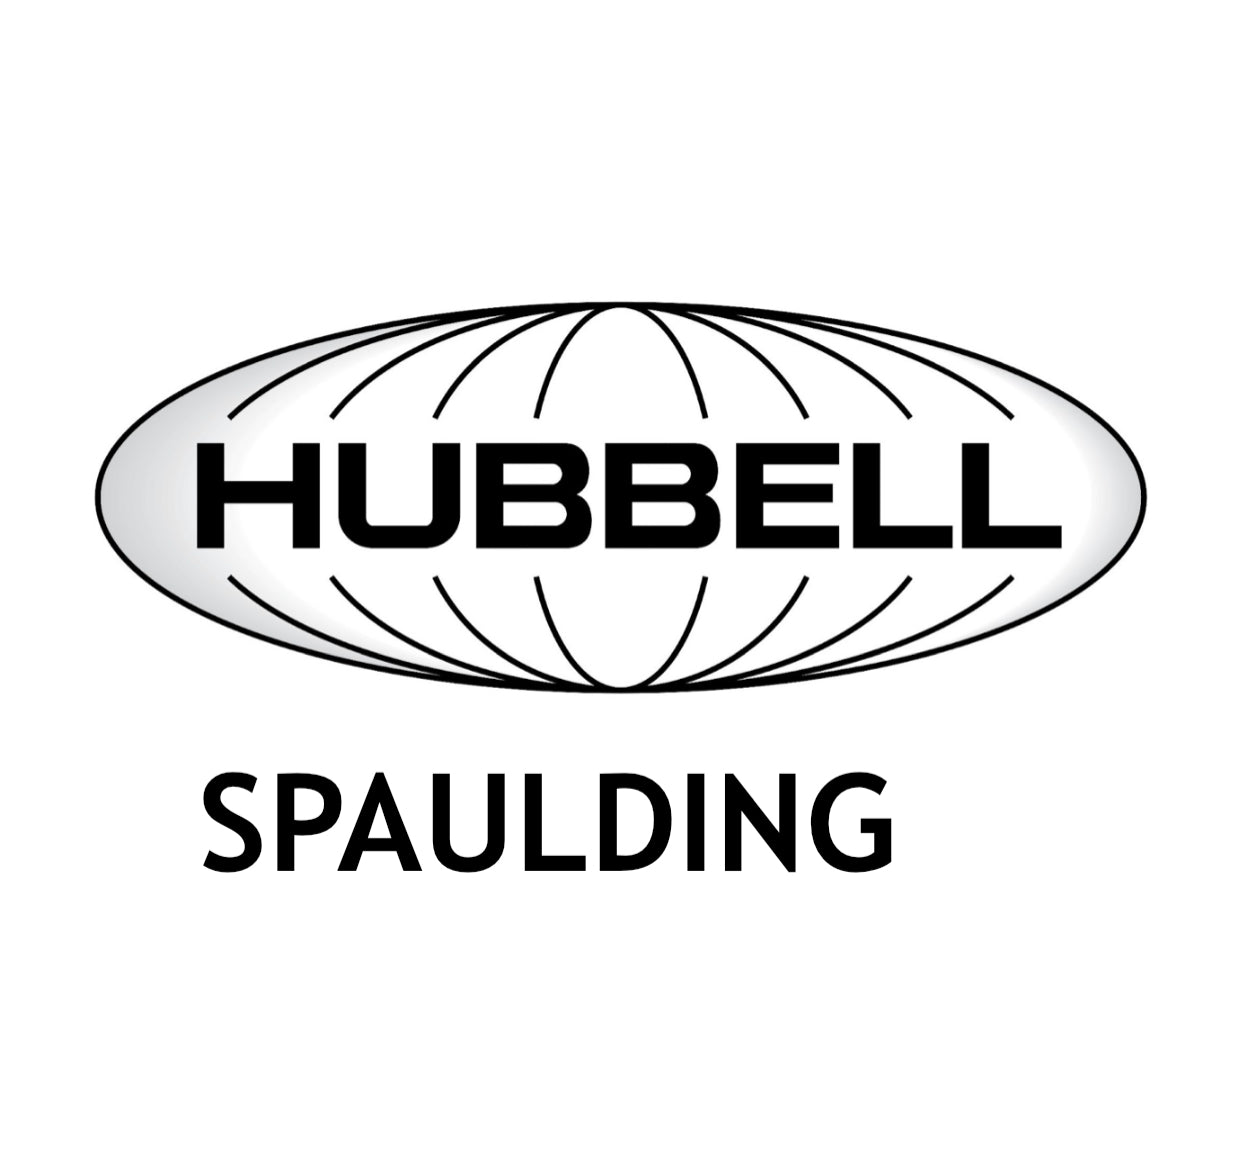 HUBBELL SPAULDING